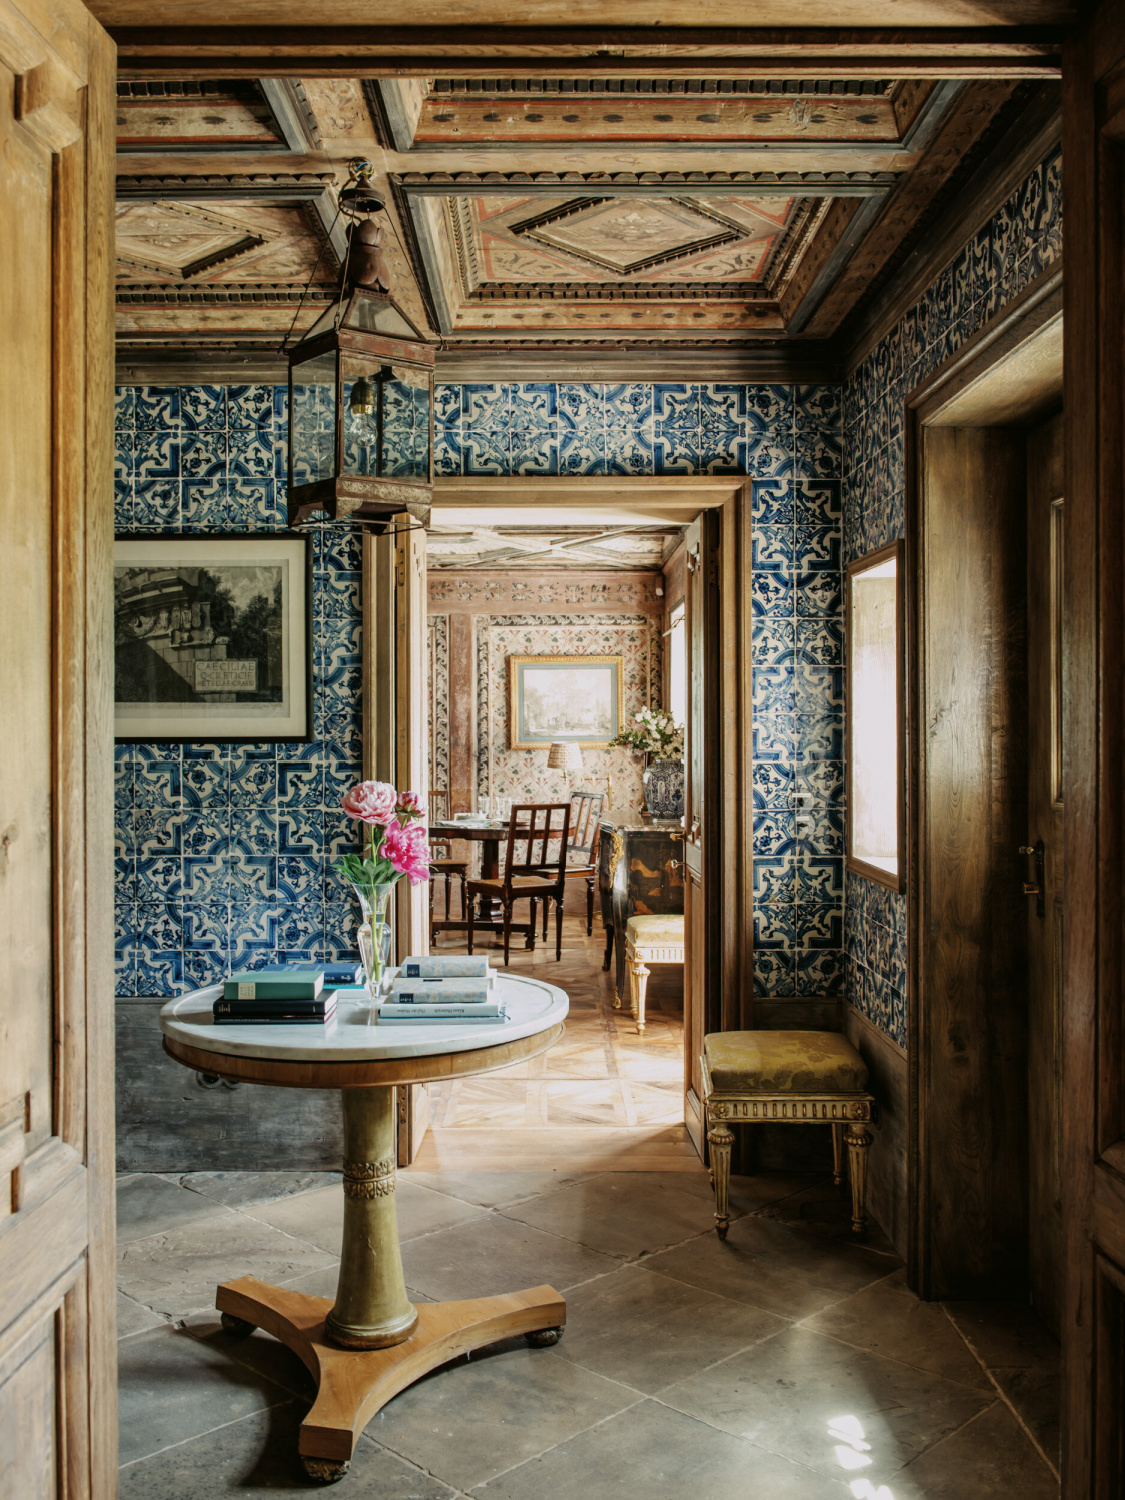 Studio Peregalli (foto: Robert Rieger) Interior em estilo antigo com acabamentos impecáveis ​​e design atemporal.  #oldworldstyle #europeancountry #sofisticatedinteriors